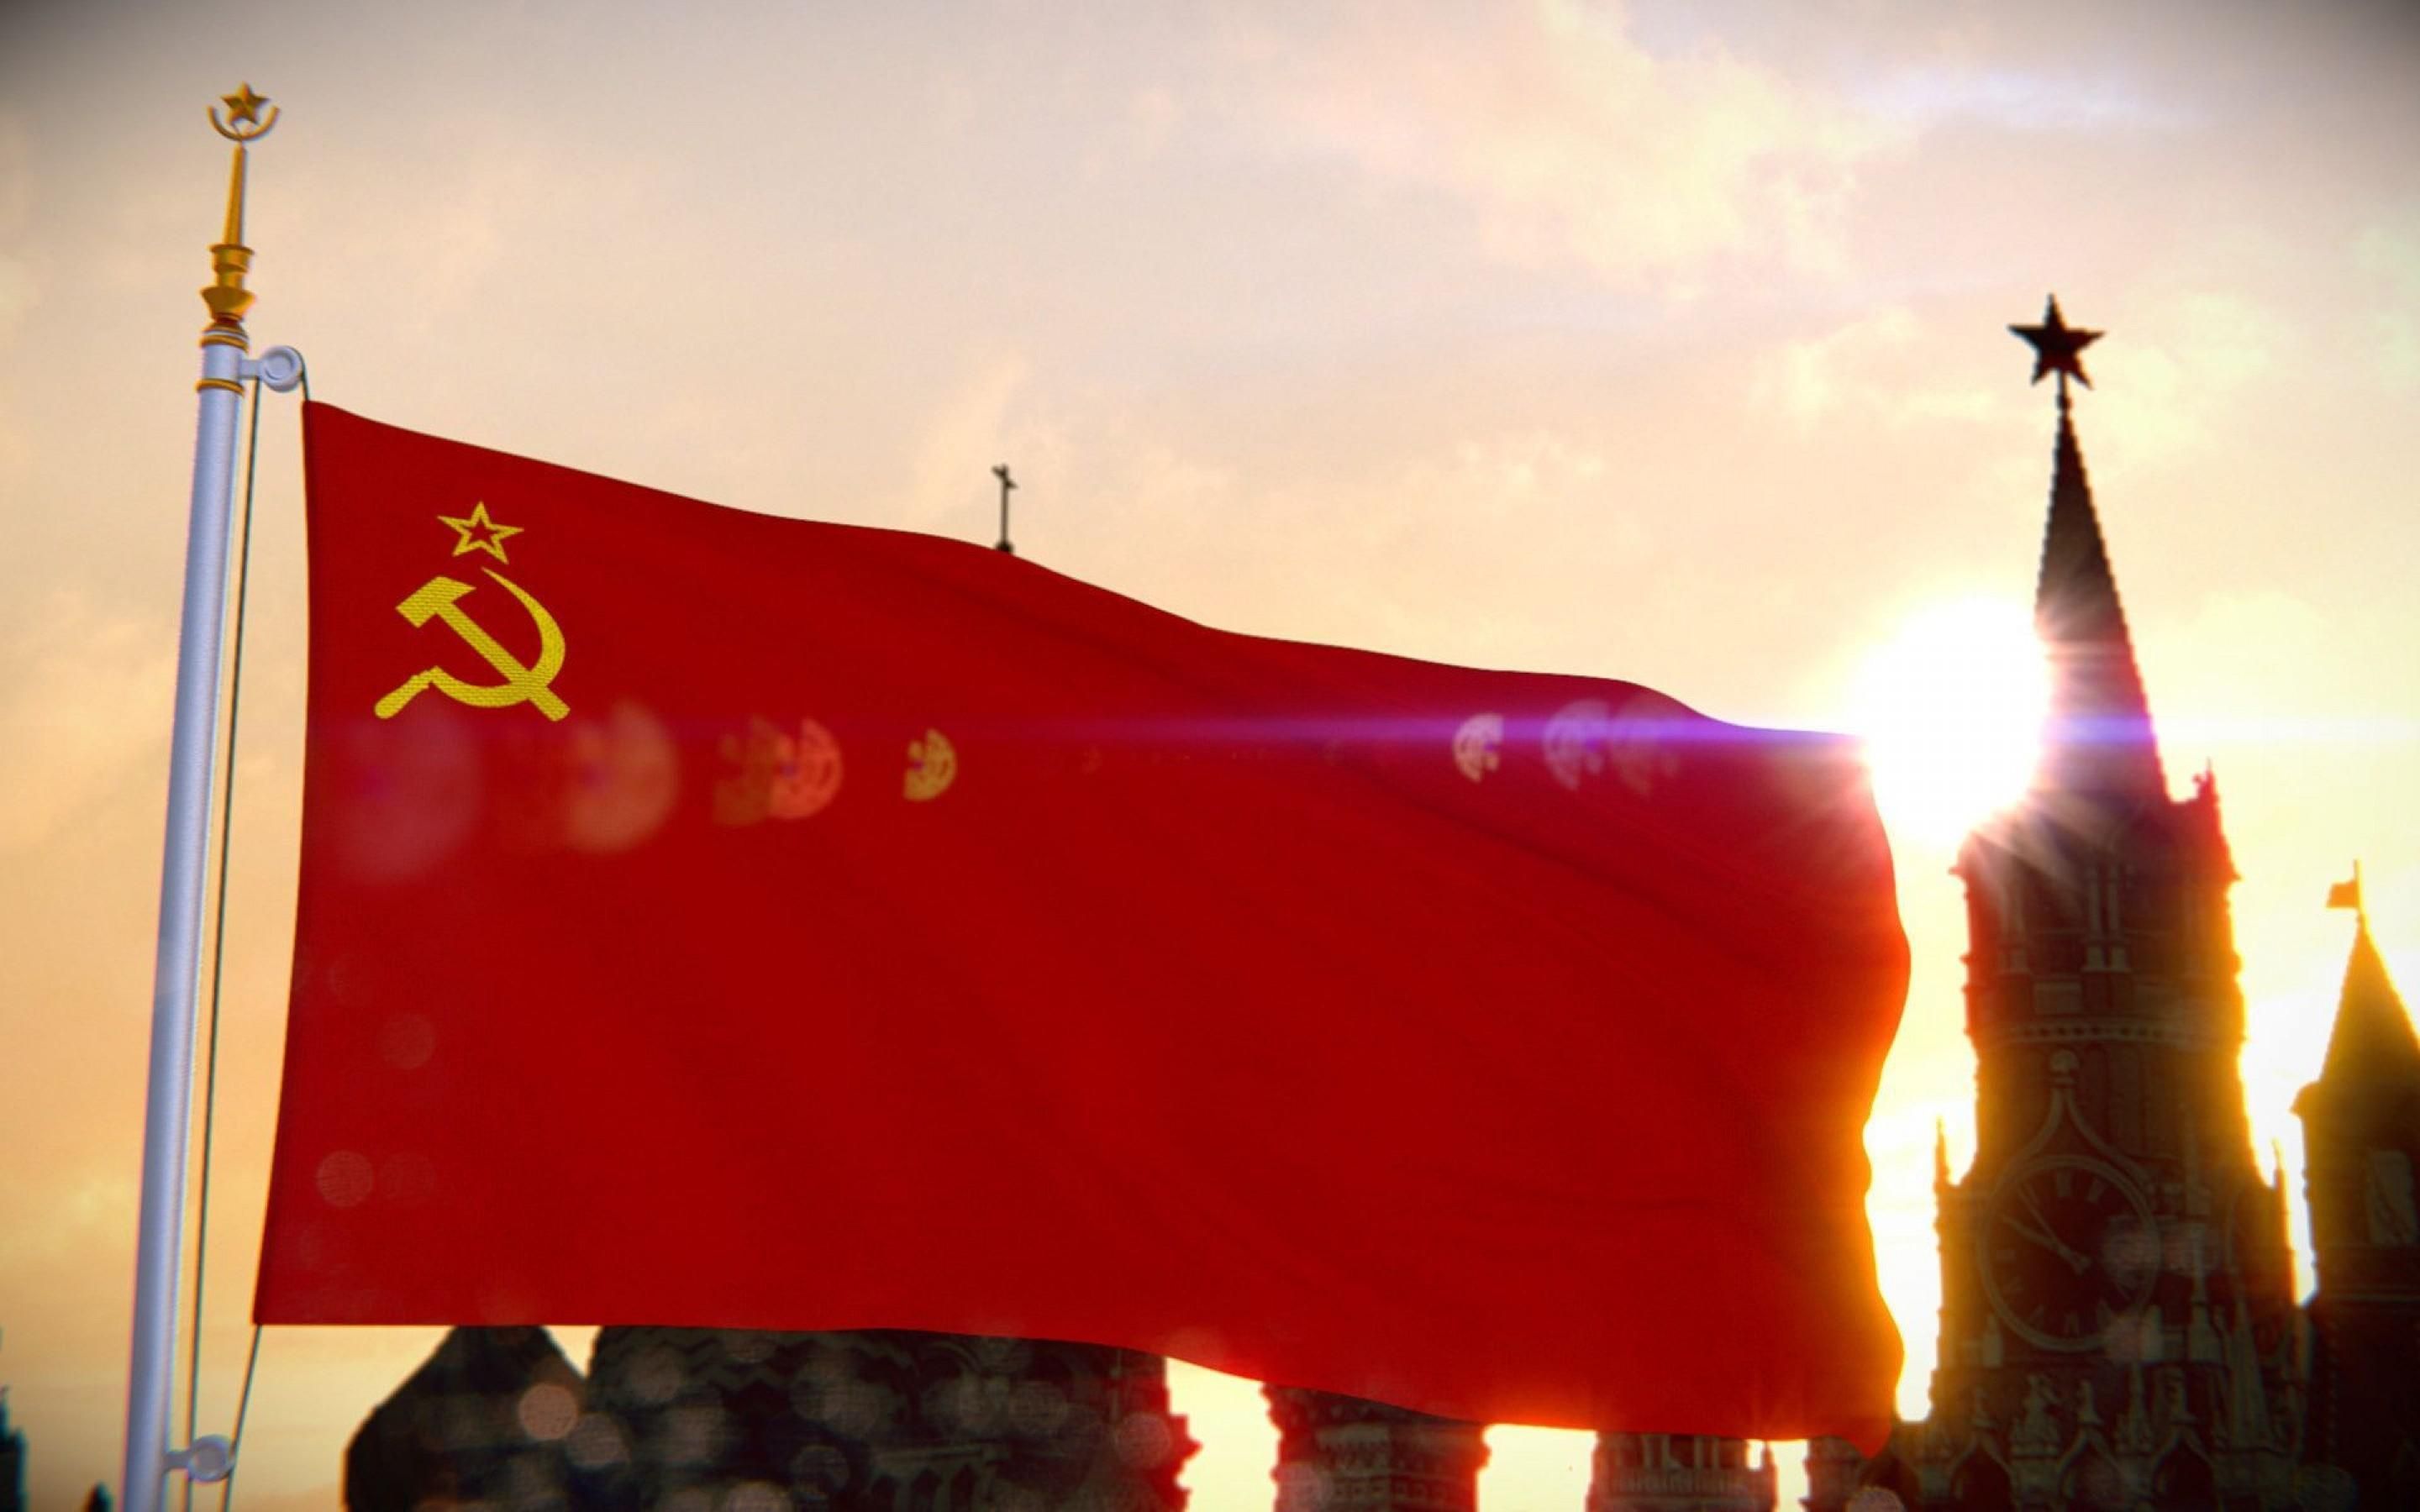 Советское наследие во всей красе: как государственный идол влияет на сознание россиян - 30 січня 2019 - Телеканал новин 24